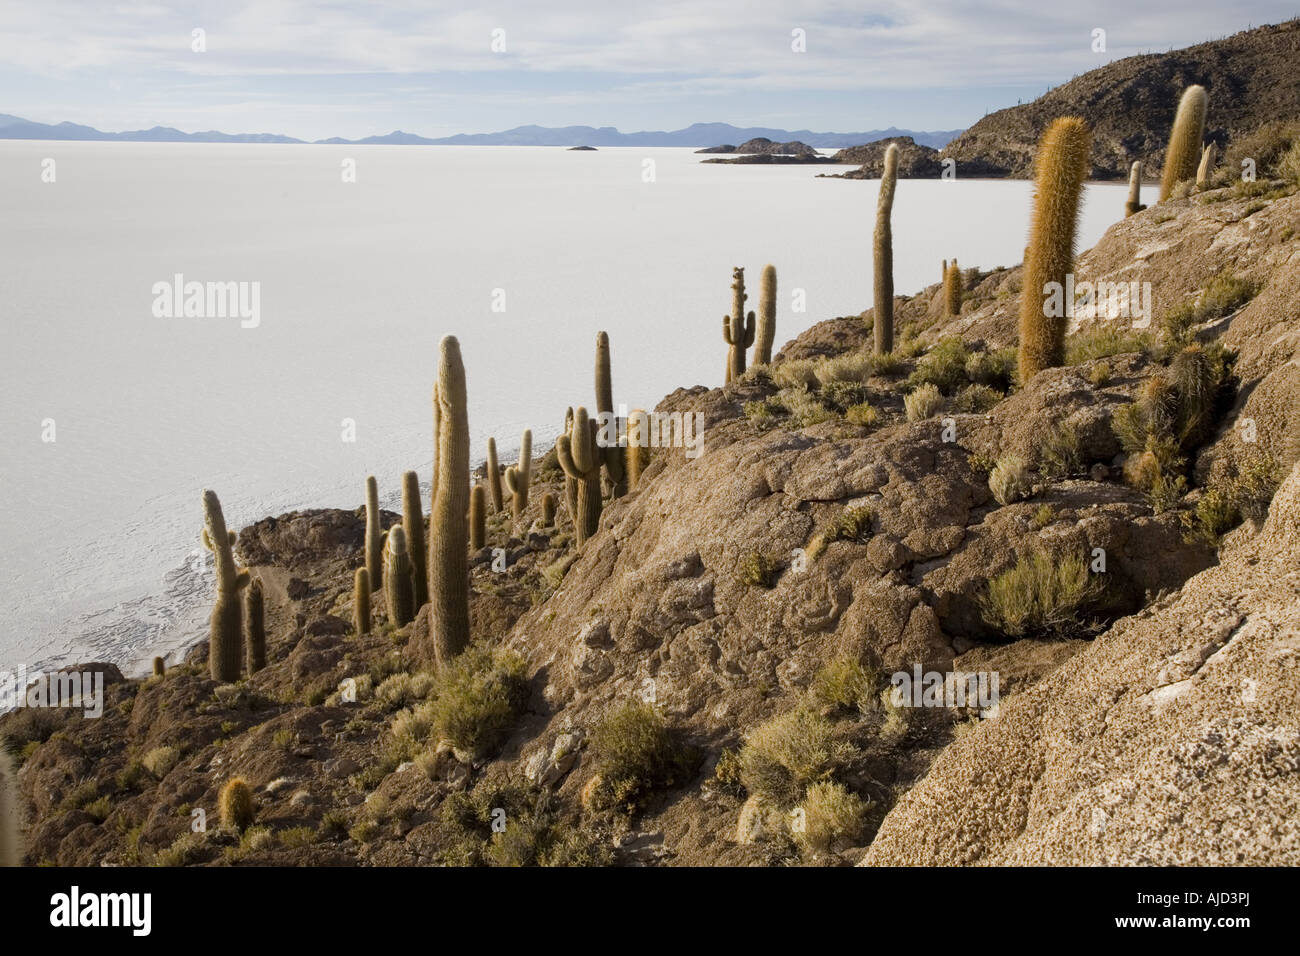 column cactus on Isla de Pescado of Salar de Uyuni, Bolivia Stock Photo